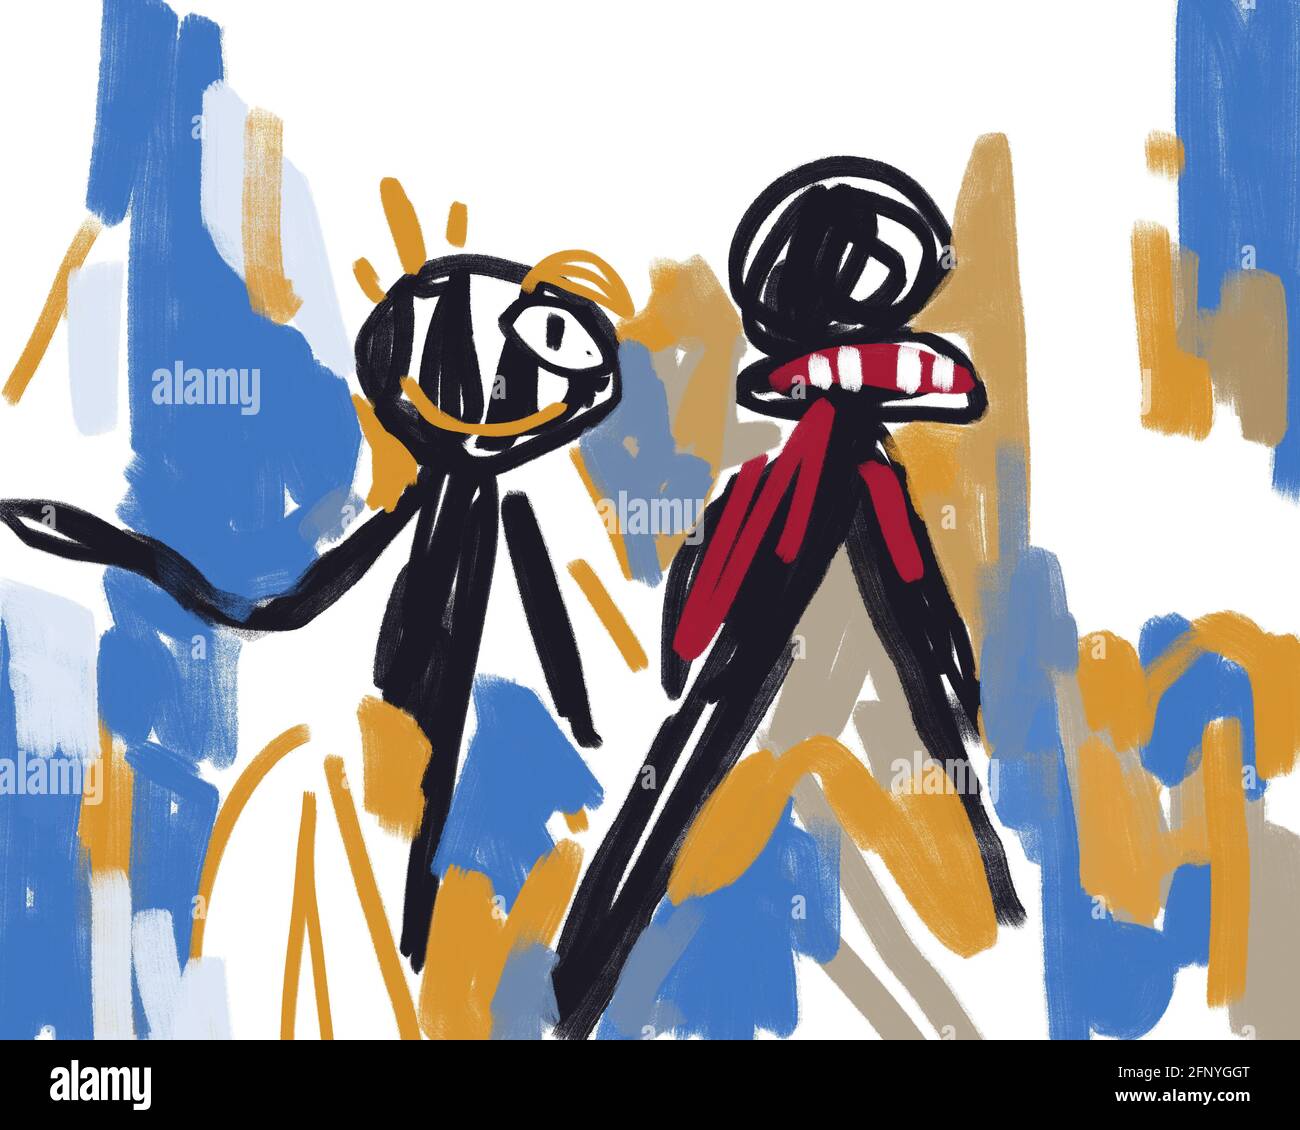 Kleiner Freund zusammen. Abstrakter und postexpressionistische Kunst. Graffiti und Basquiat-Vibe. Abstract Concept Art Malerei für T-Shirt, Print, Poster und Stockfoto